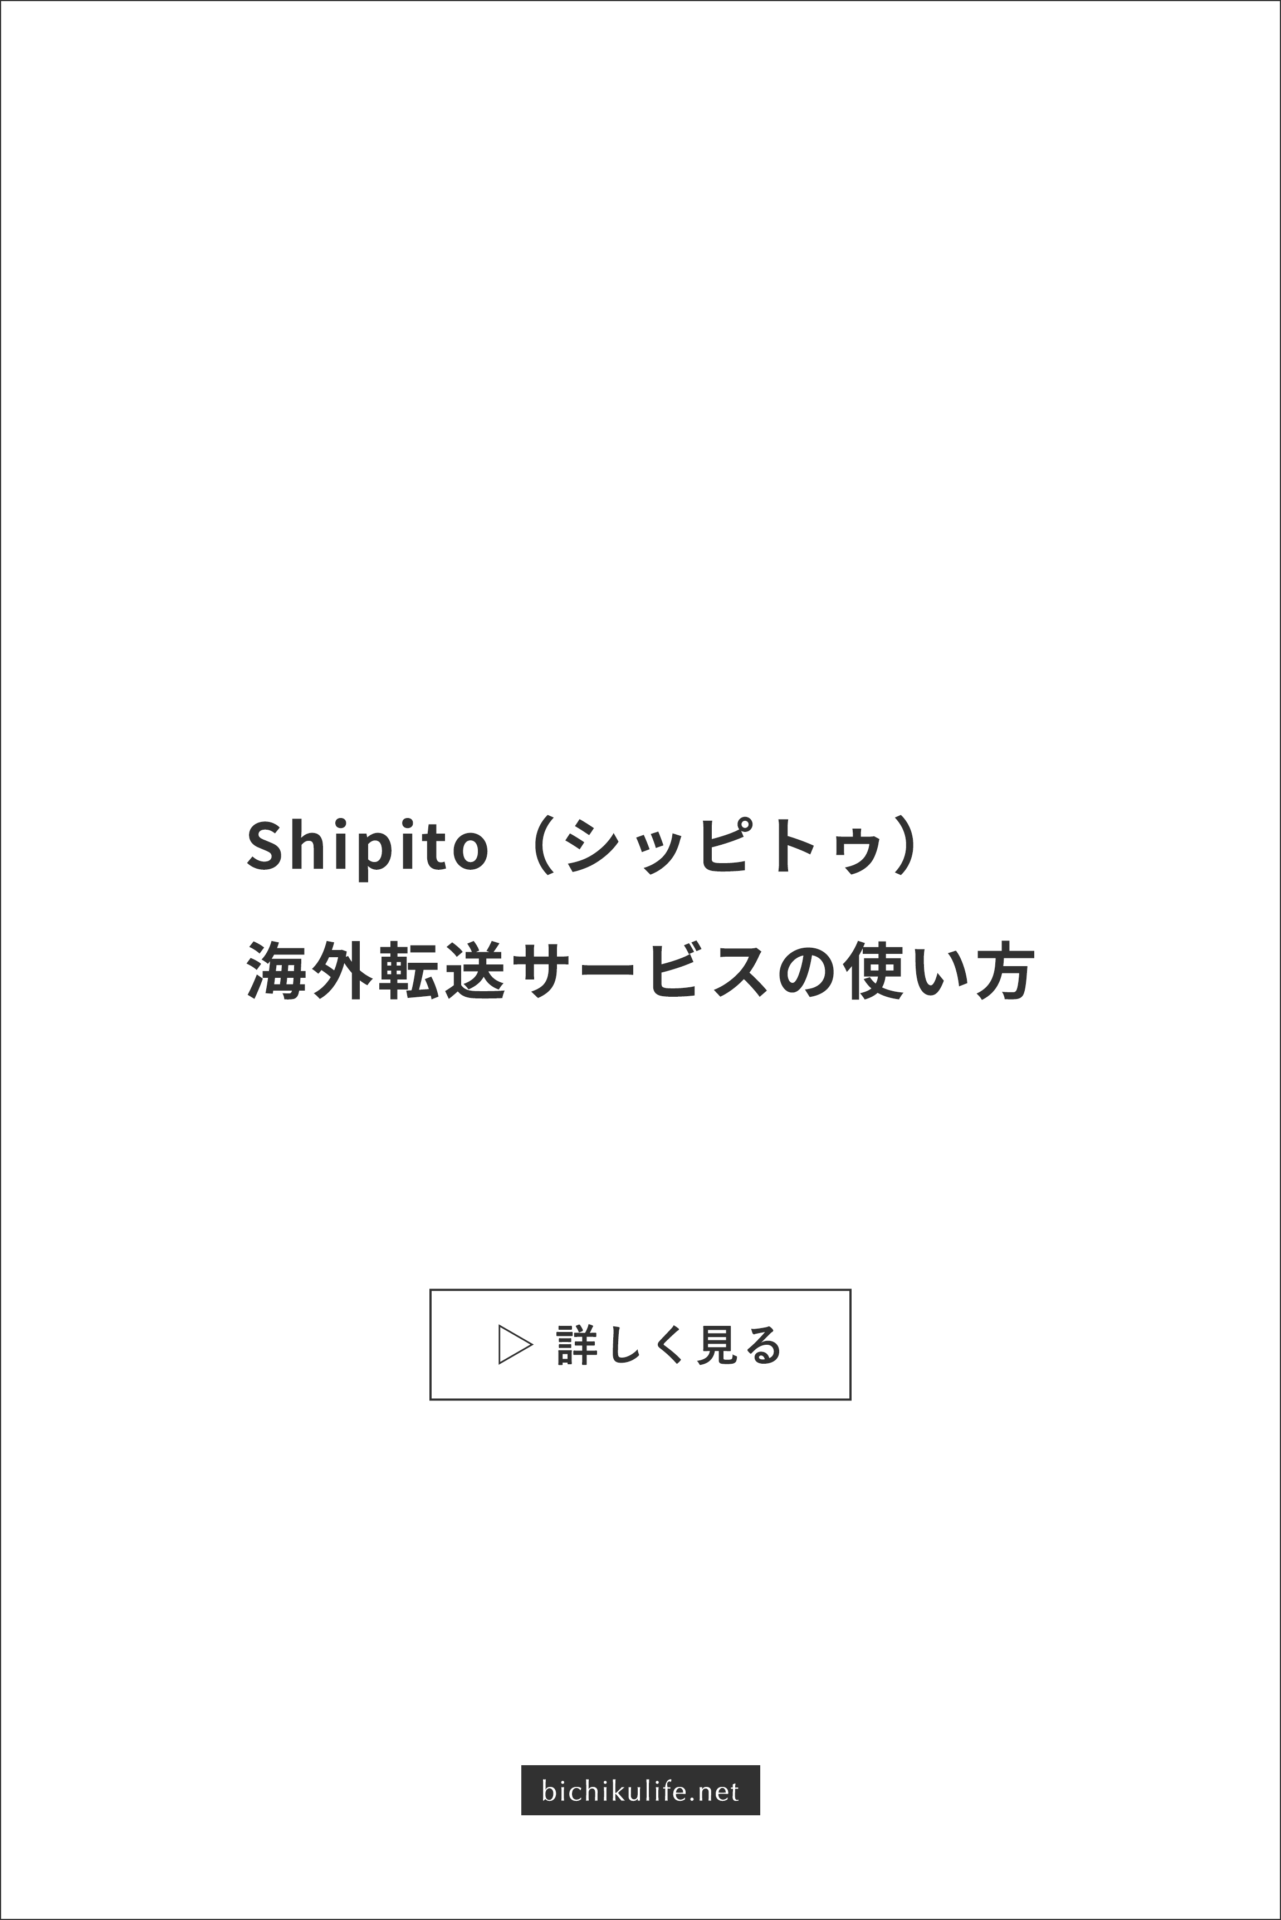 海外転送サービスのShipito（シッピトゥ）の特徴、プラン、実際に使ってみた際の使い方・手順を解説